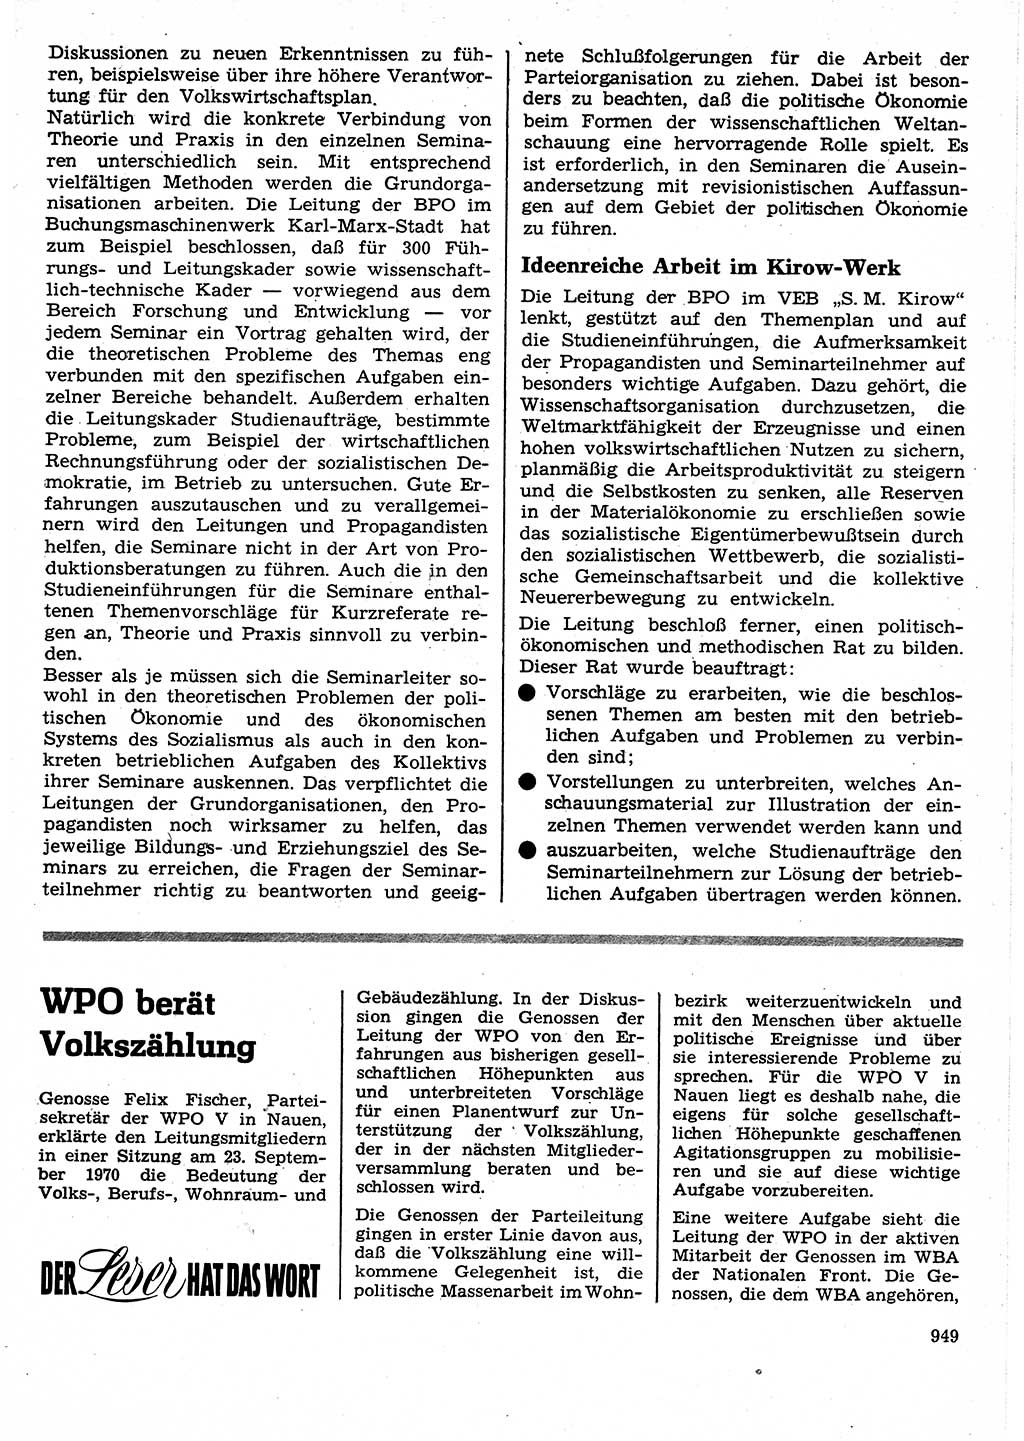 Neuer Weg (NW), Organ des Zentralkomitees (ZK) der SED (Sozialistische Einheitspartei Deutschlands) für Fragen des Parteilebens, 25. Jahrgang [Deutsche Demokratische Republik (DDR)] 1970, Seite 949 (NW ZK SED DDR 1970, S. 949)